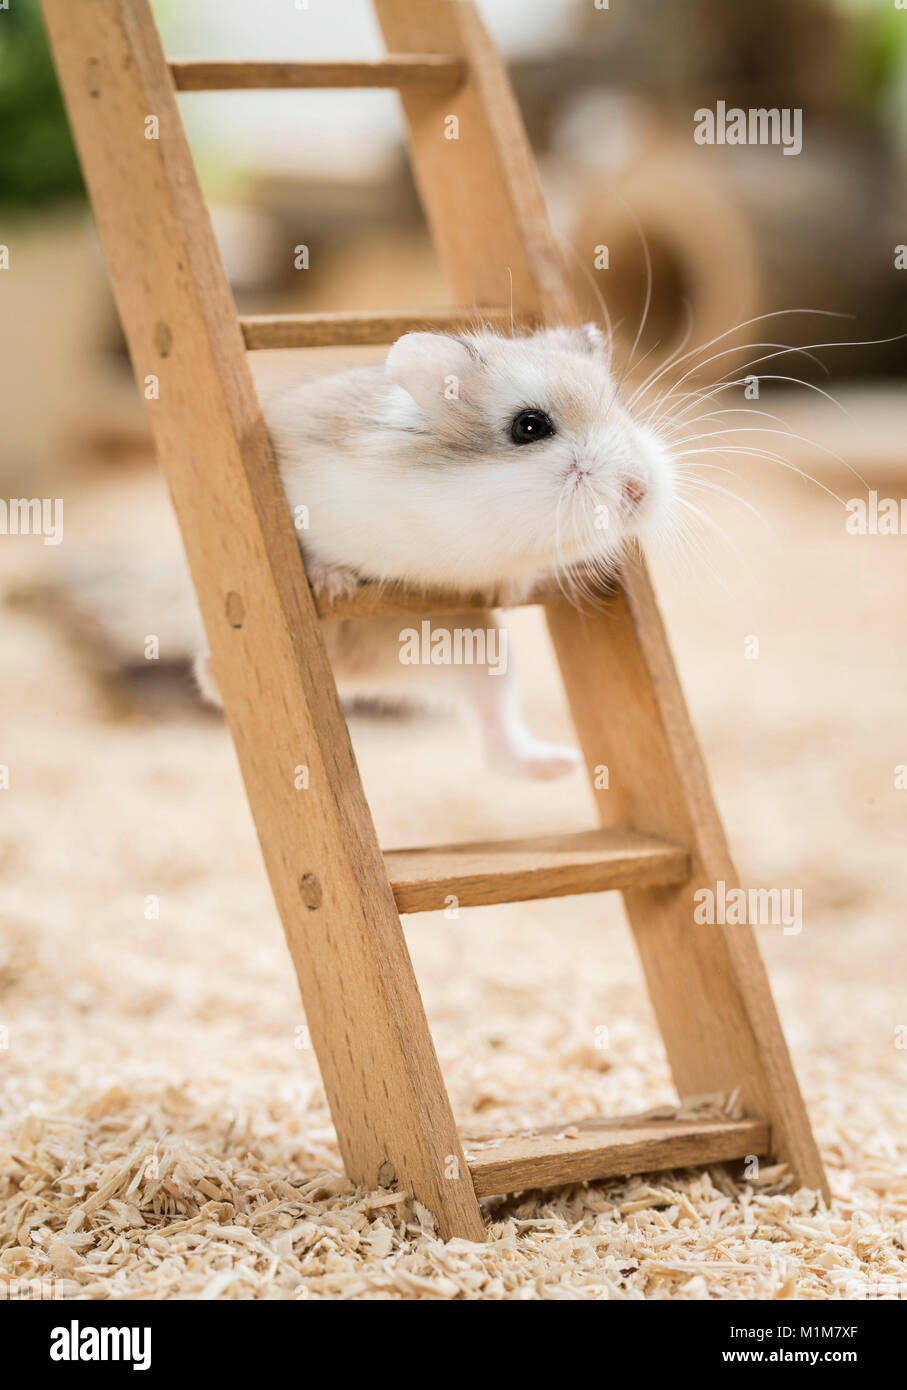 Hamster Roborovski (Phodopus roborovskii) grimper sur une échelle en bois. Restriction : pas de guides pour les soins des animaux jusqu'à 09,2017 Banque D'Images